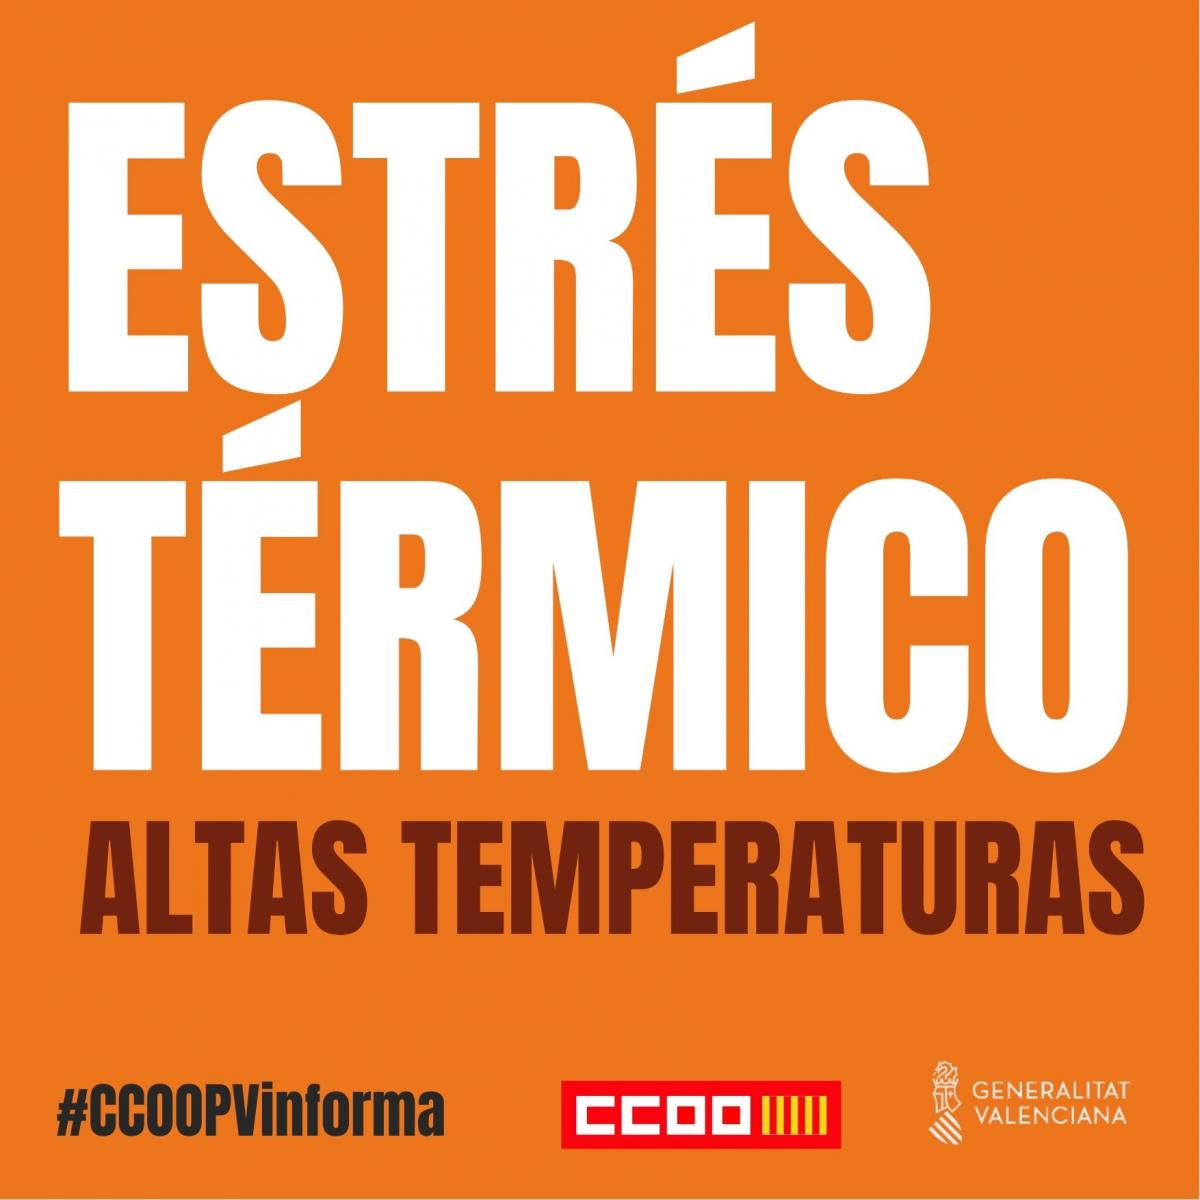 Folleto #CCOOPVinforma sobre estrés térmico